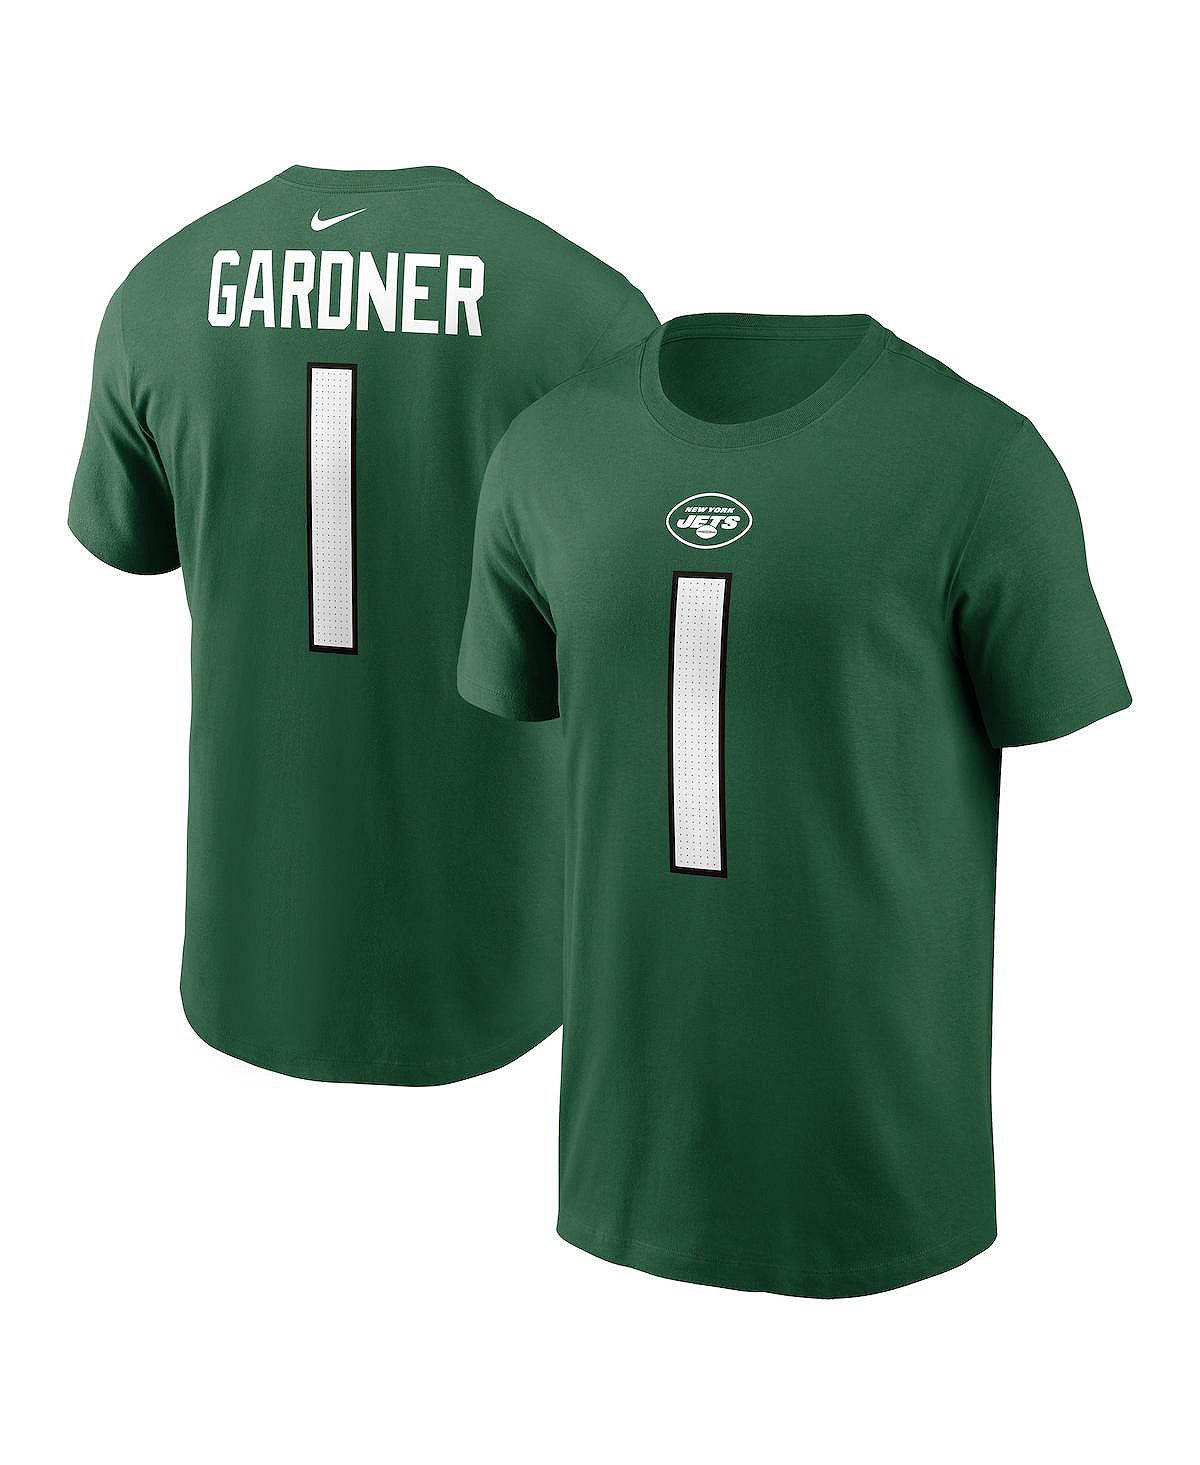 Мужская футболка Sauce Gardner Green New York Jets с именем и номером игрока Nike gardner charlie dinosaurs